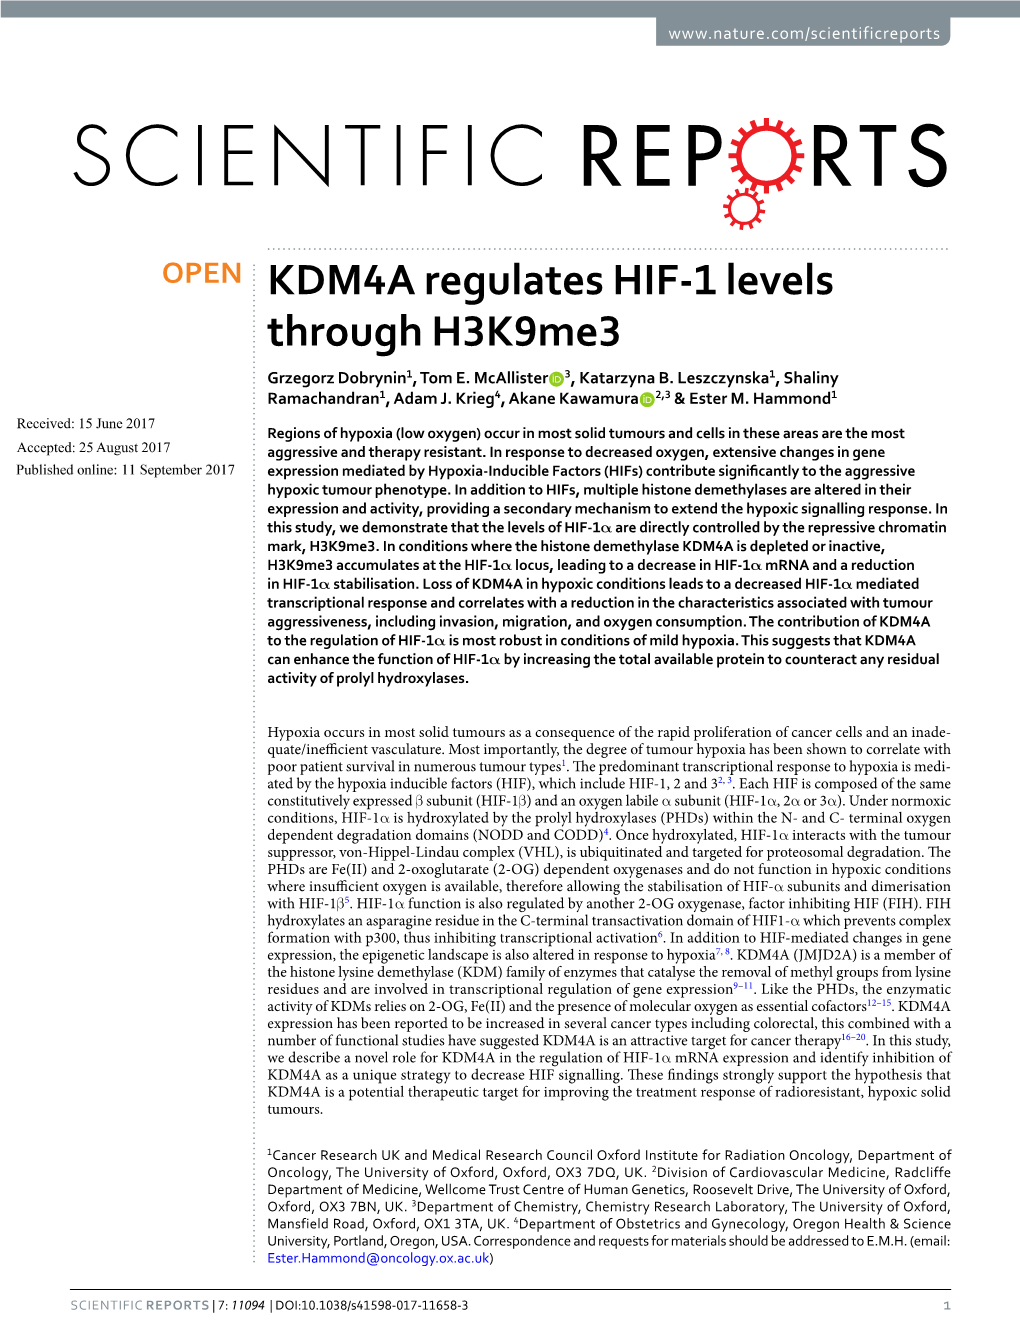 KDM4A Regulates HIF-1 Levels Through H3k9me3 Grzegorz Dobrynin1, Tom E